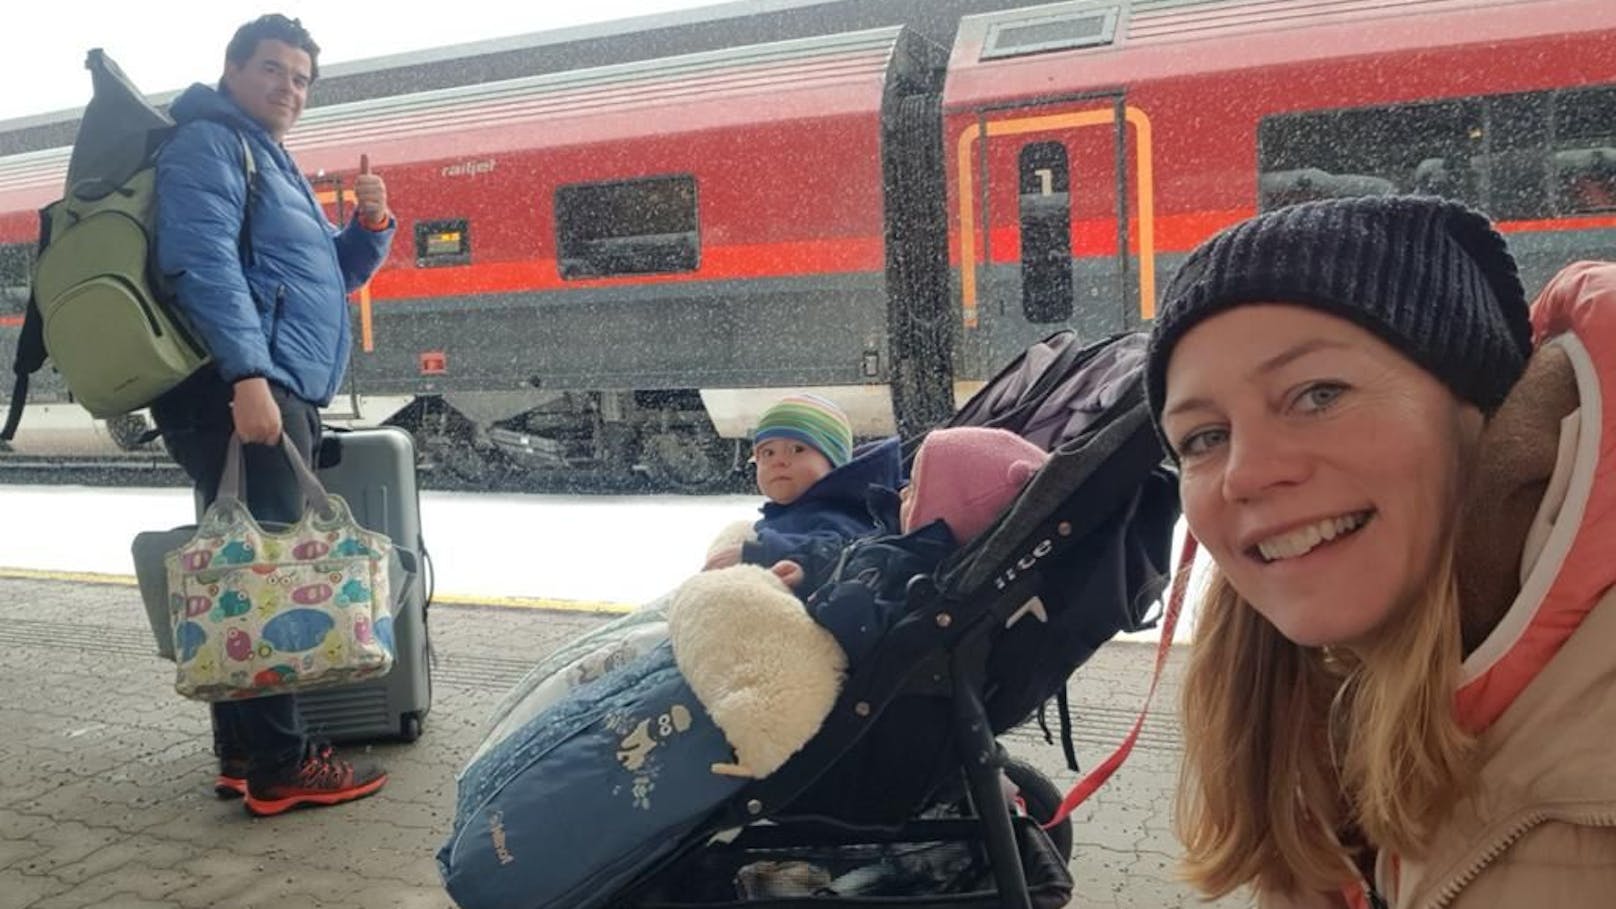 Vater wollte Babys aus Railjet holen, doch Zug fuhr ab